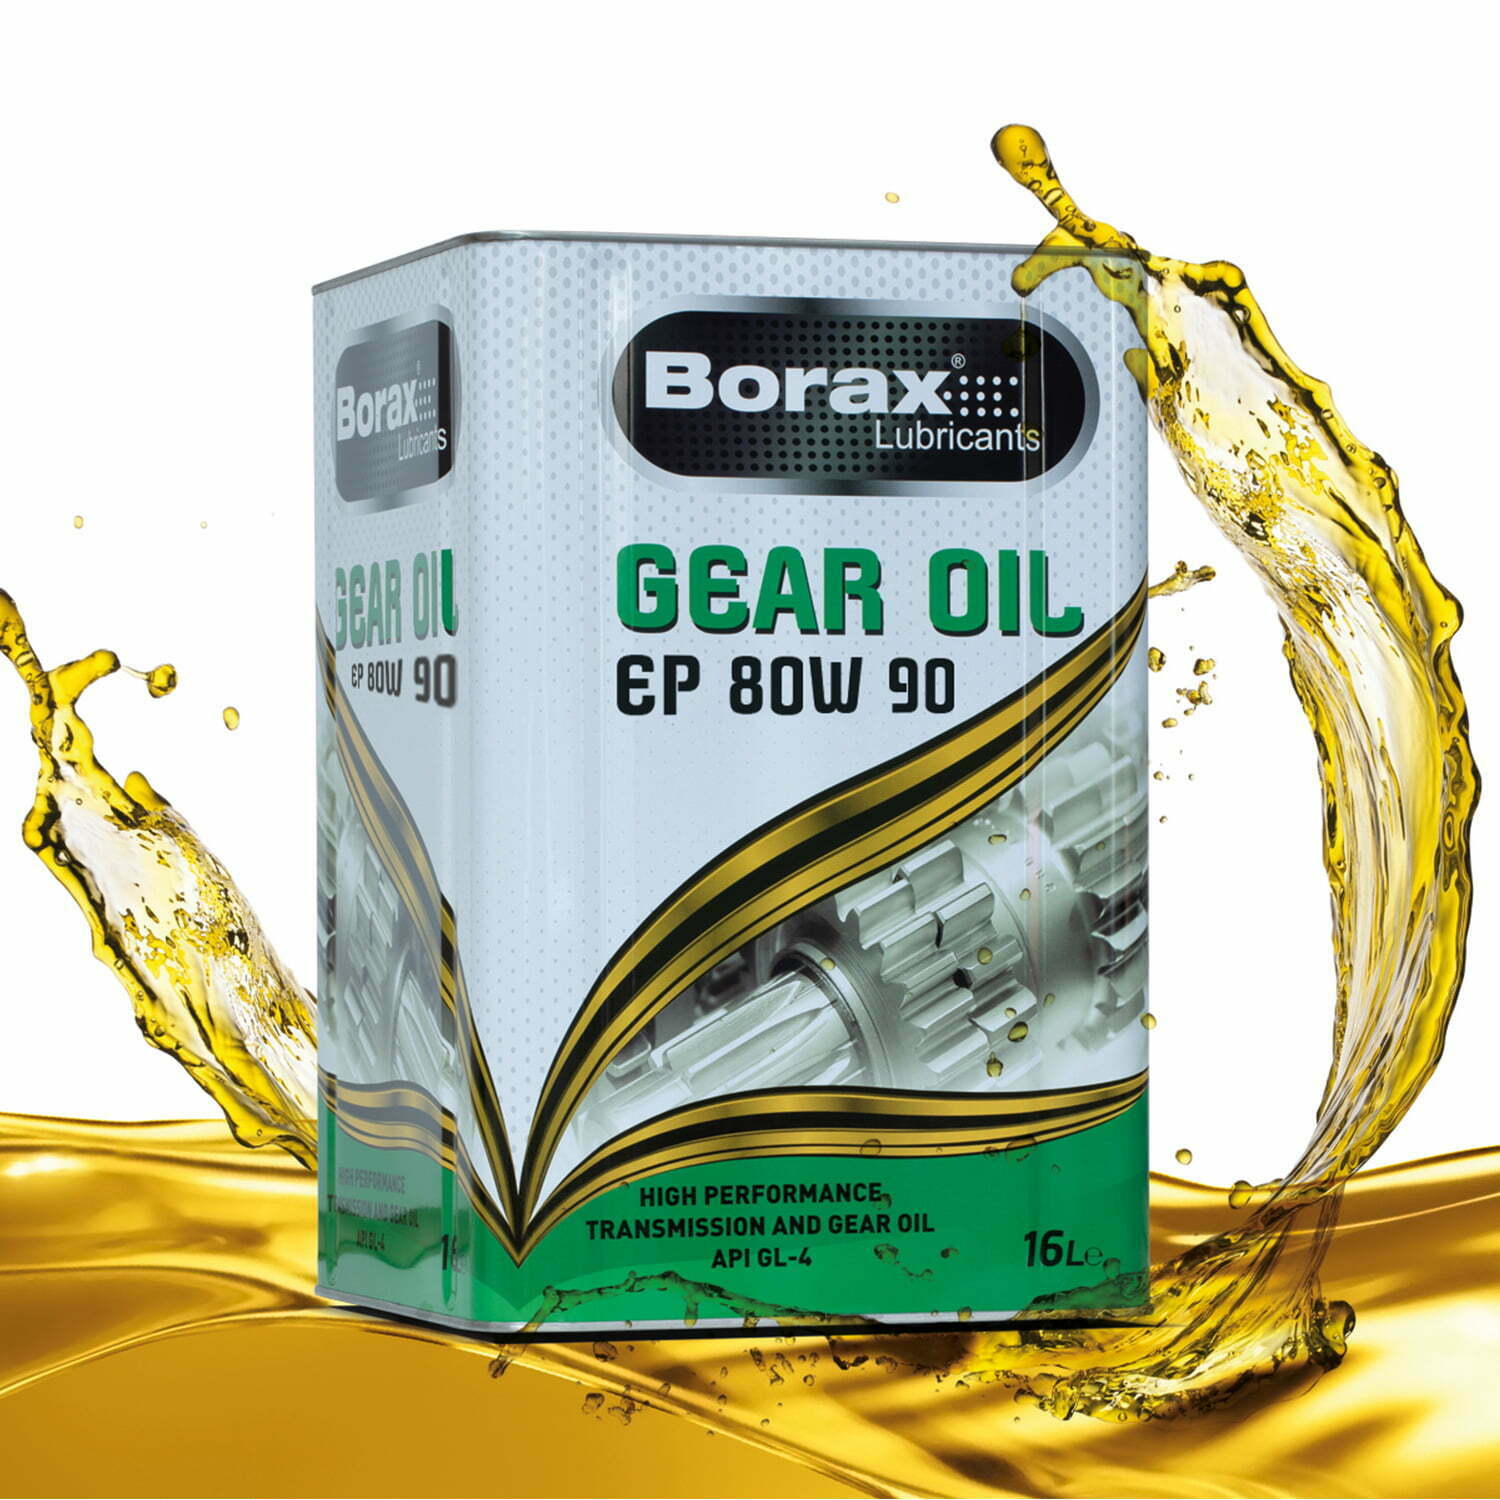 borax gear oil ep 80w 90 disli yagi 80w 90 14 kg 16 lt 11226